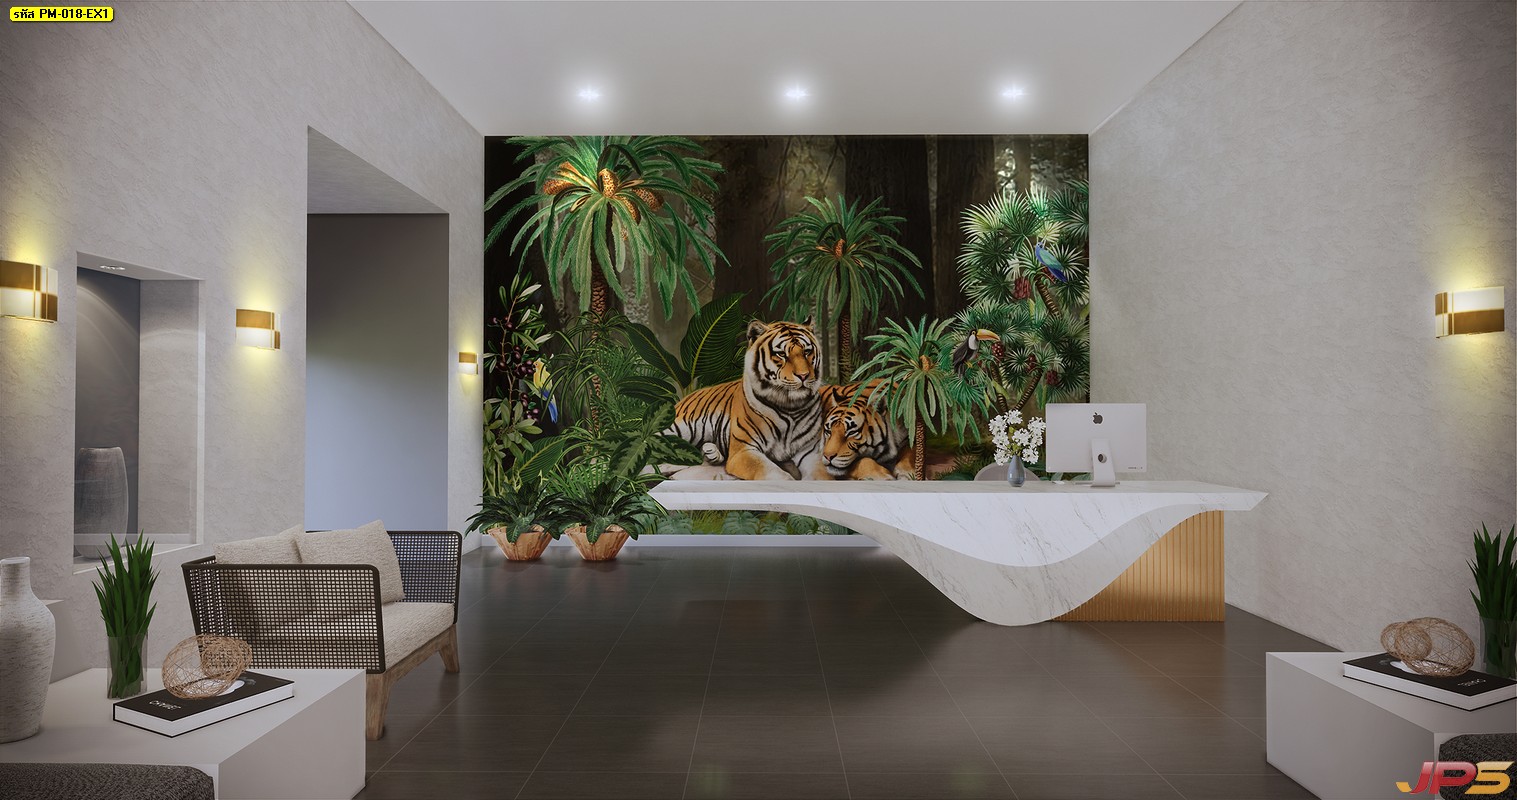 Wallpaper สั่งทำราคาถูก ลายสวนป่าเสือโคร่ง ตกแต่งภายในบ้านหรู 